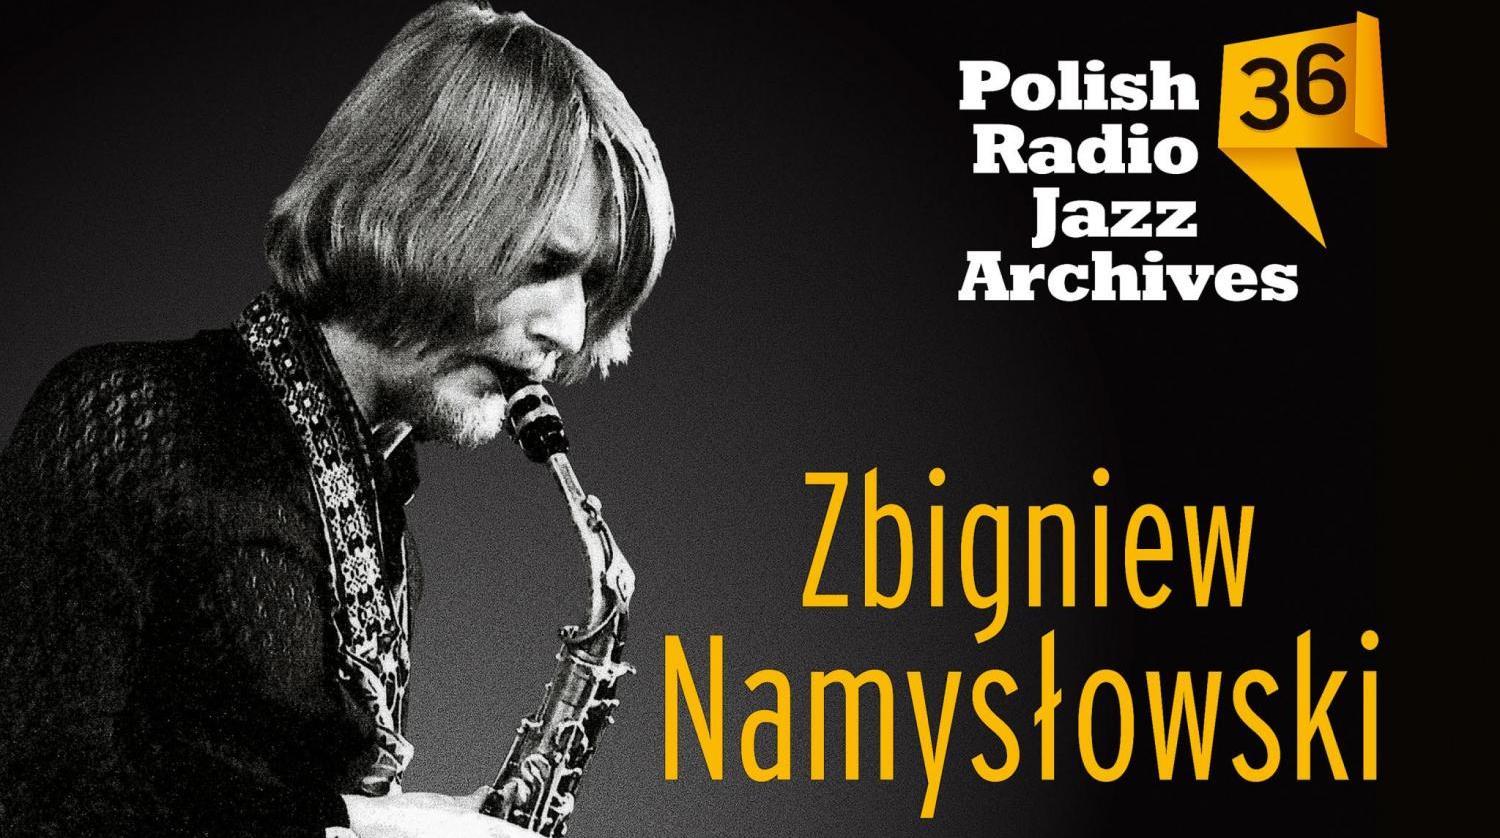 Zbigniew Namysłowski (c) Polish Radio Jazz Archives